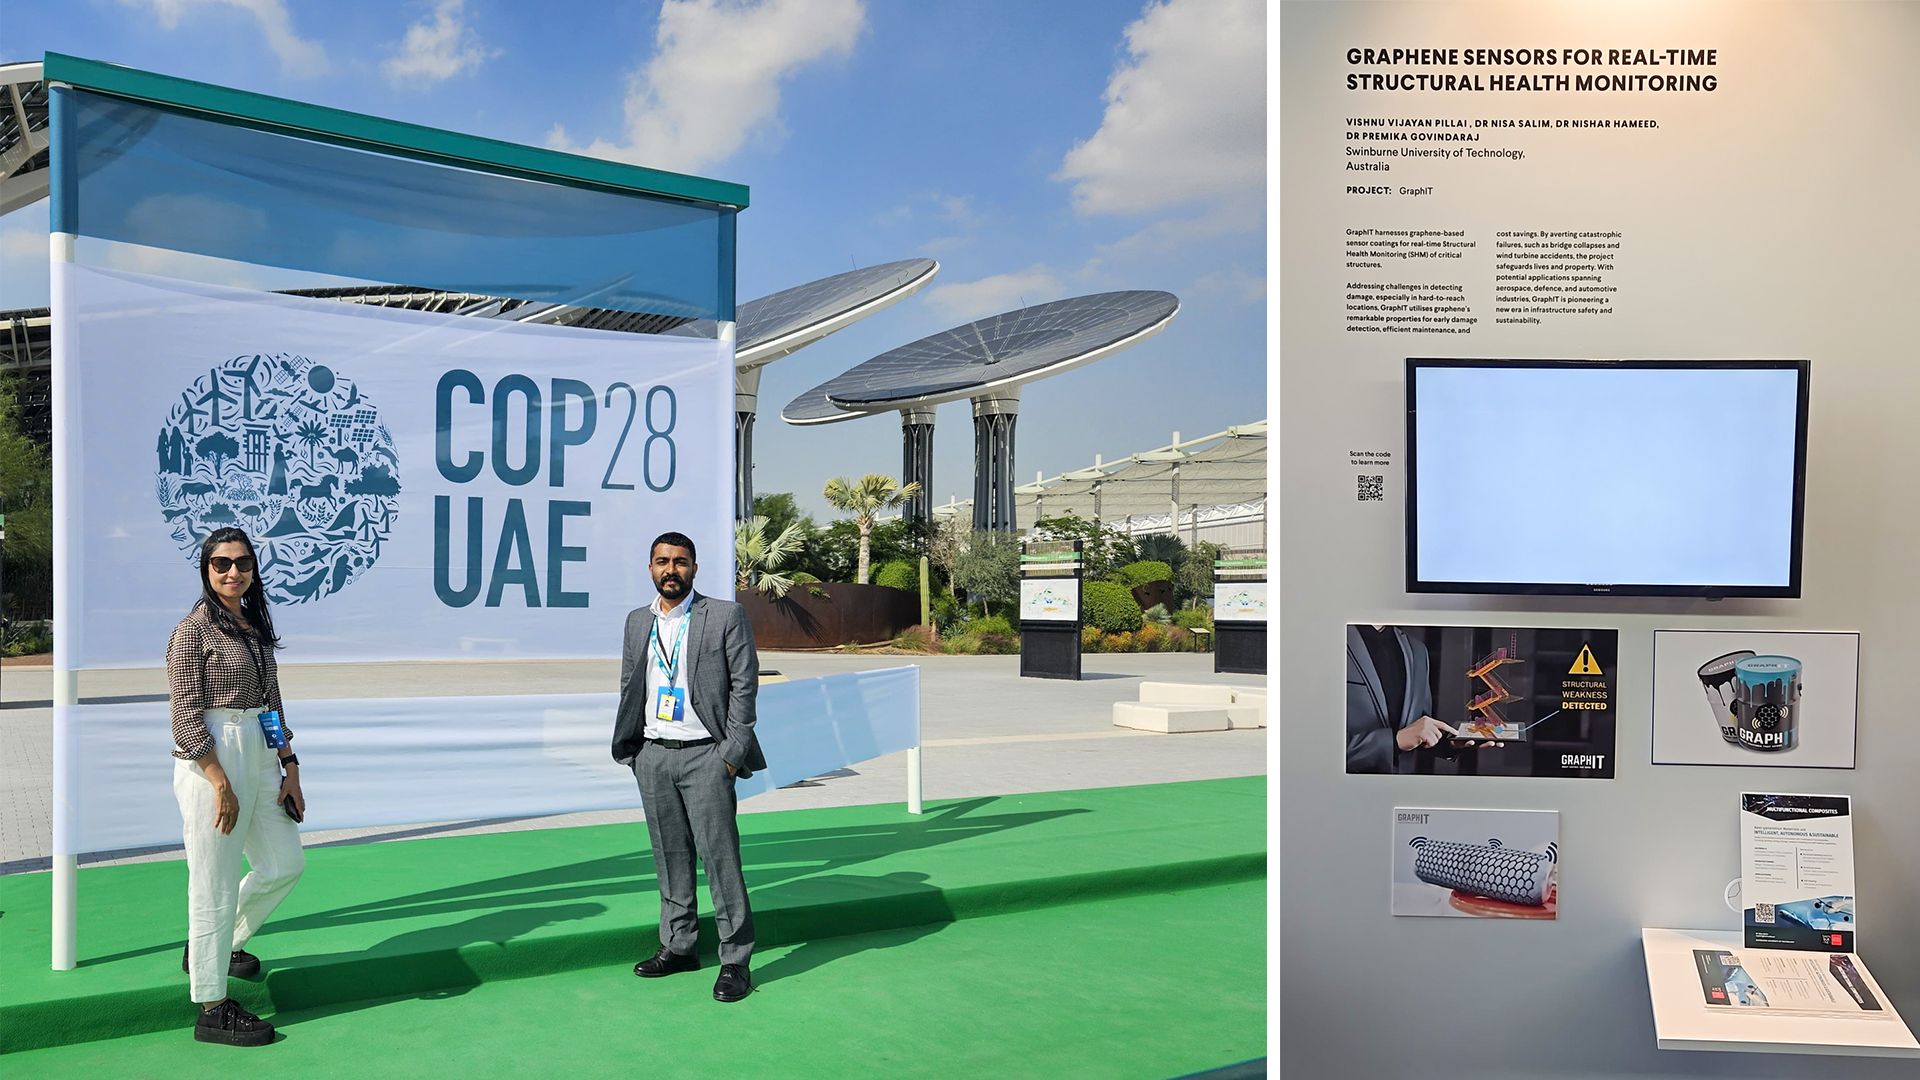 Dr Nisa Salim and Vishnu Pillai in front of a COP28 UAE banner in Dubai.